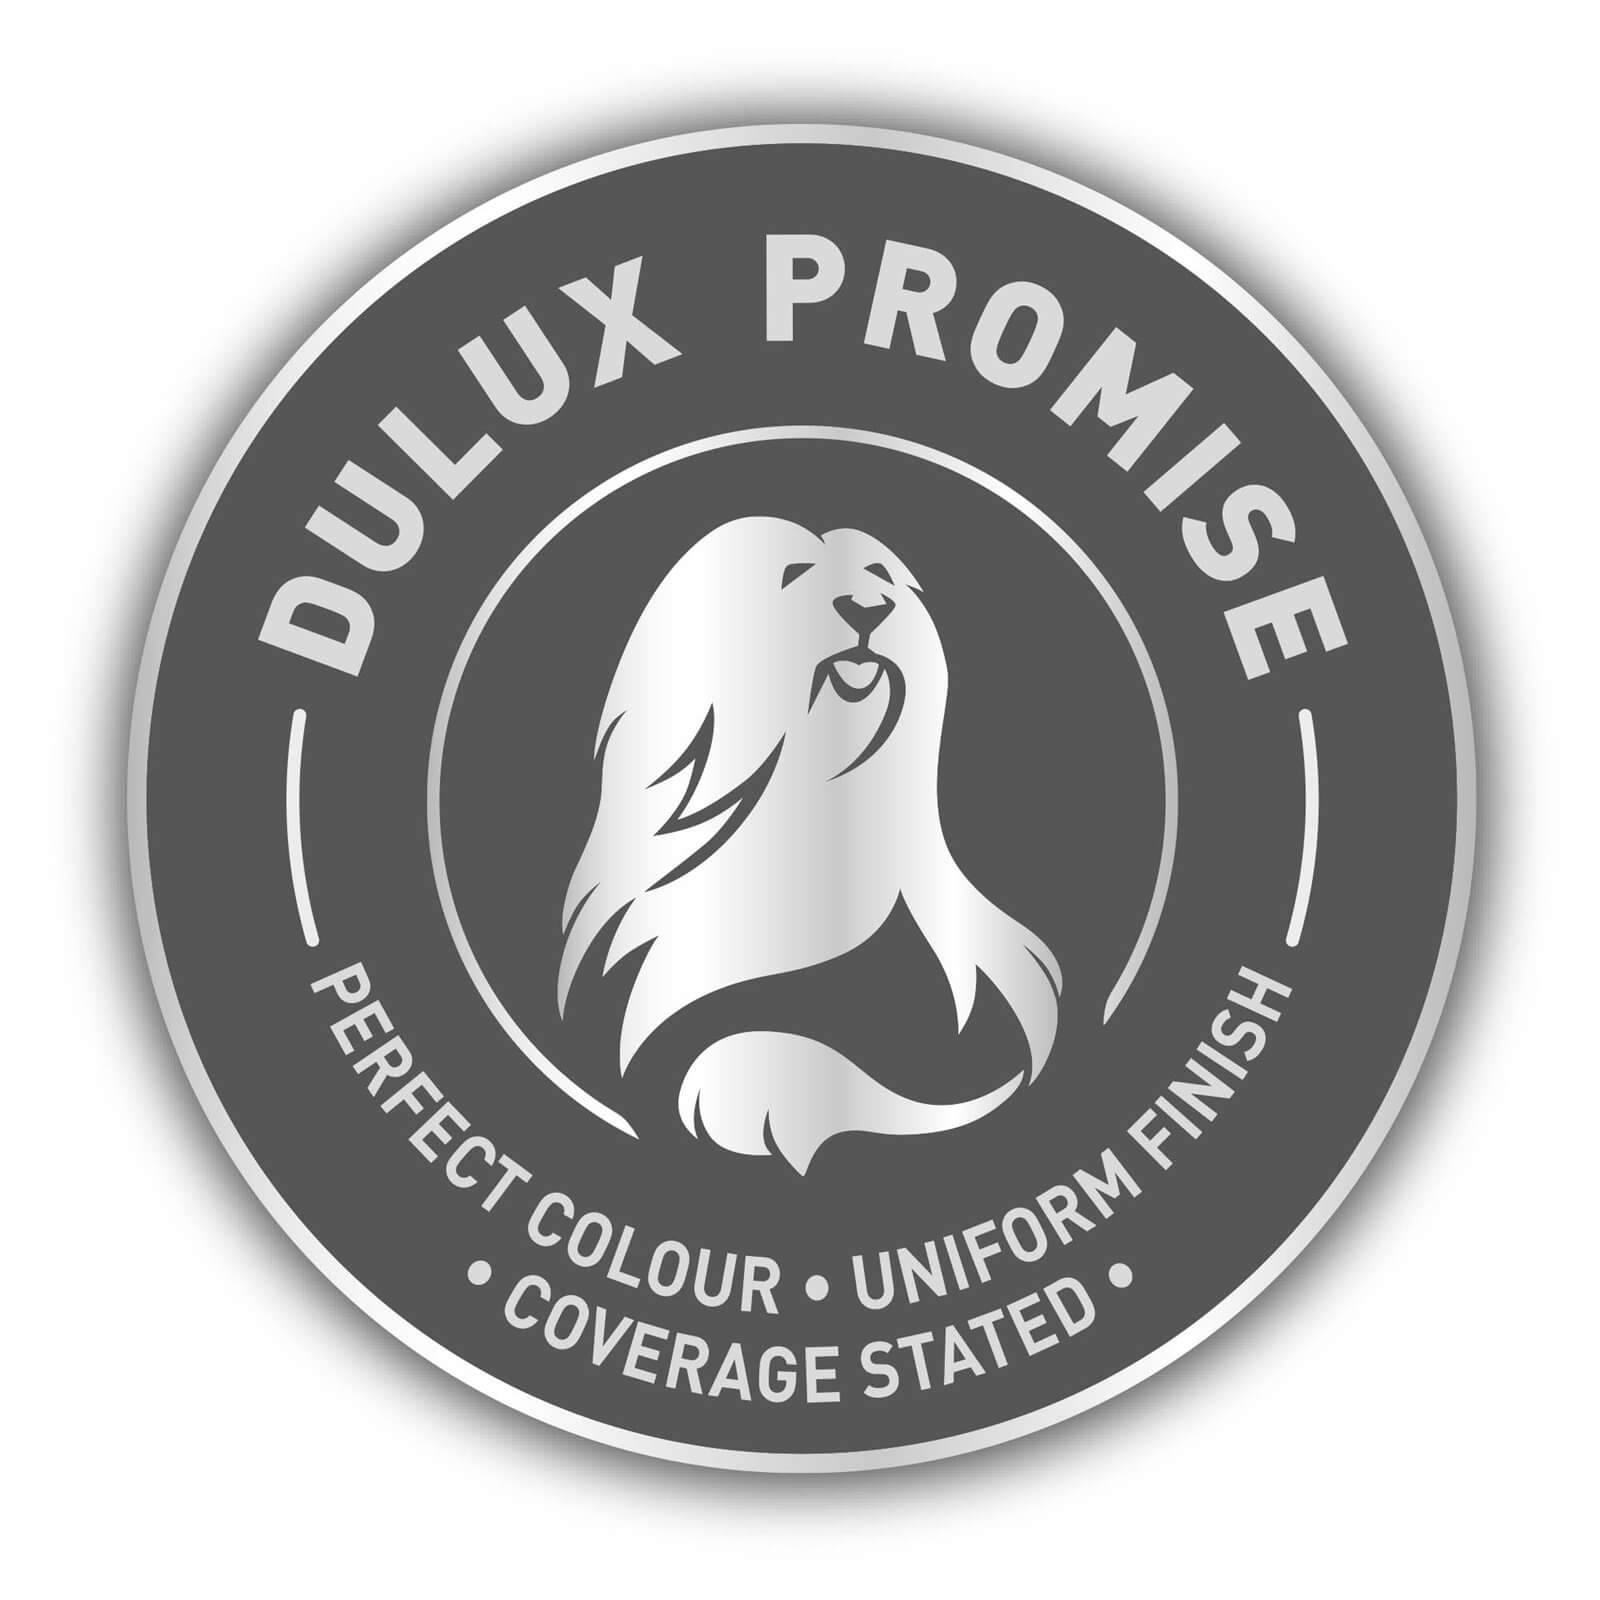 Dulux Matt Emulsion Paint Nordic Sky - 2.5L